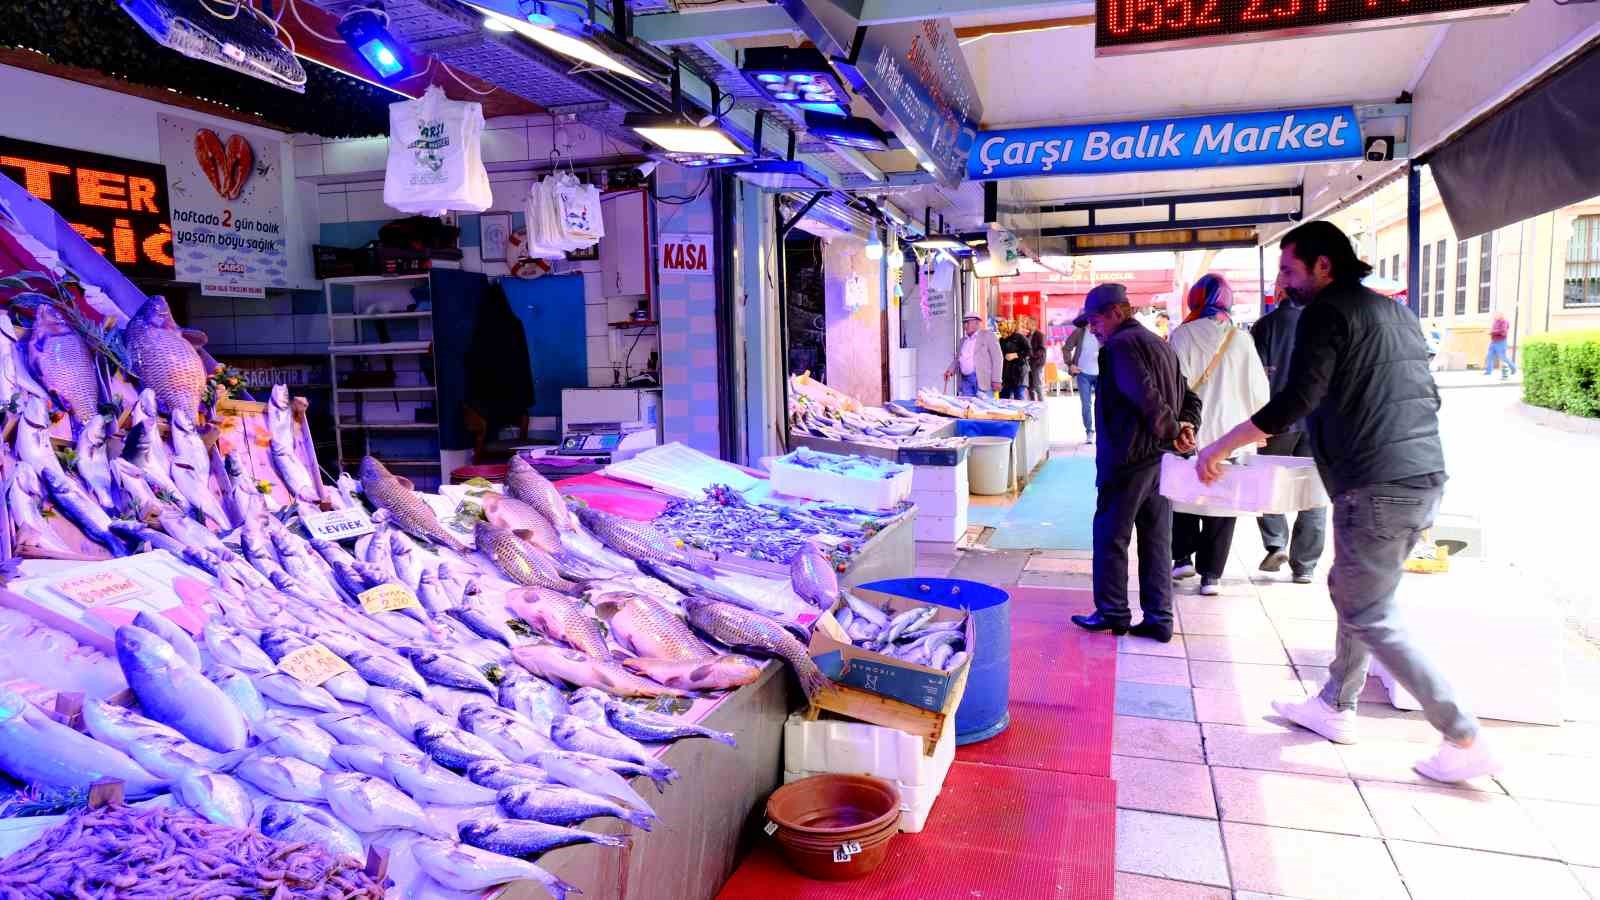 Eskişehir’de havalar ısındı balıkçı esnafın satışları azaldı